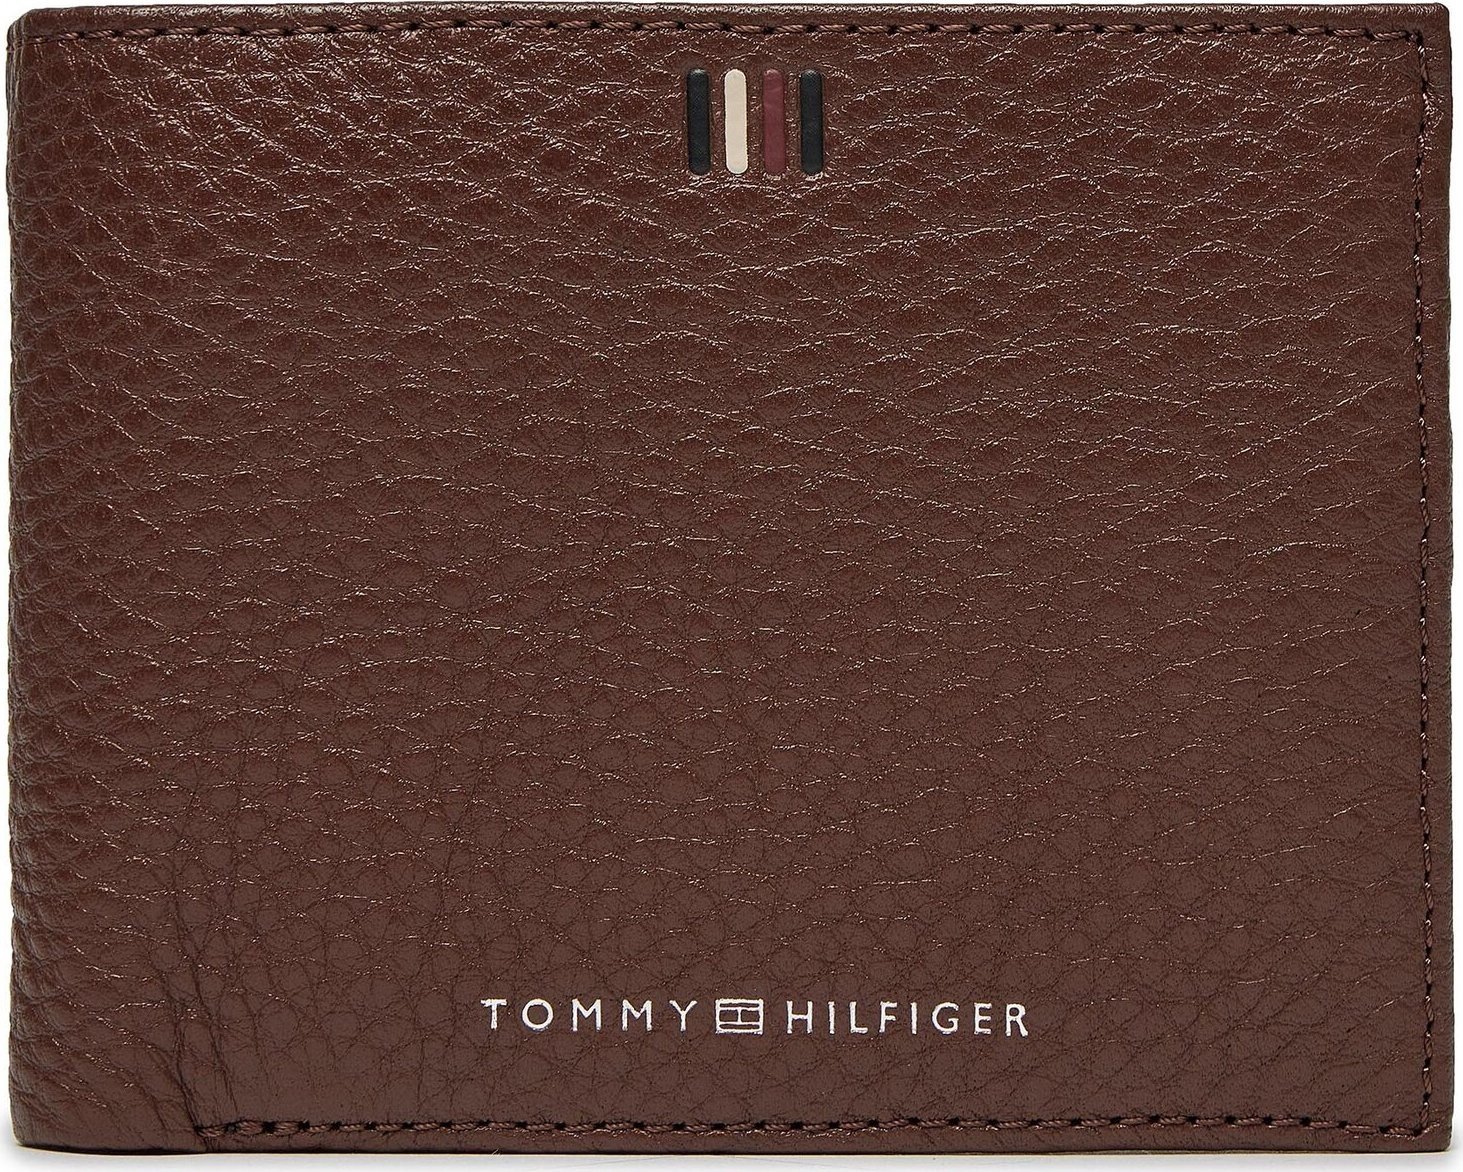 Velká pánská peněženka Tommy Hilfiger Th Central Cc Flap And Coin AM0AM11856 Dark Chestnut GT8